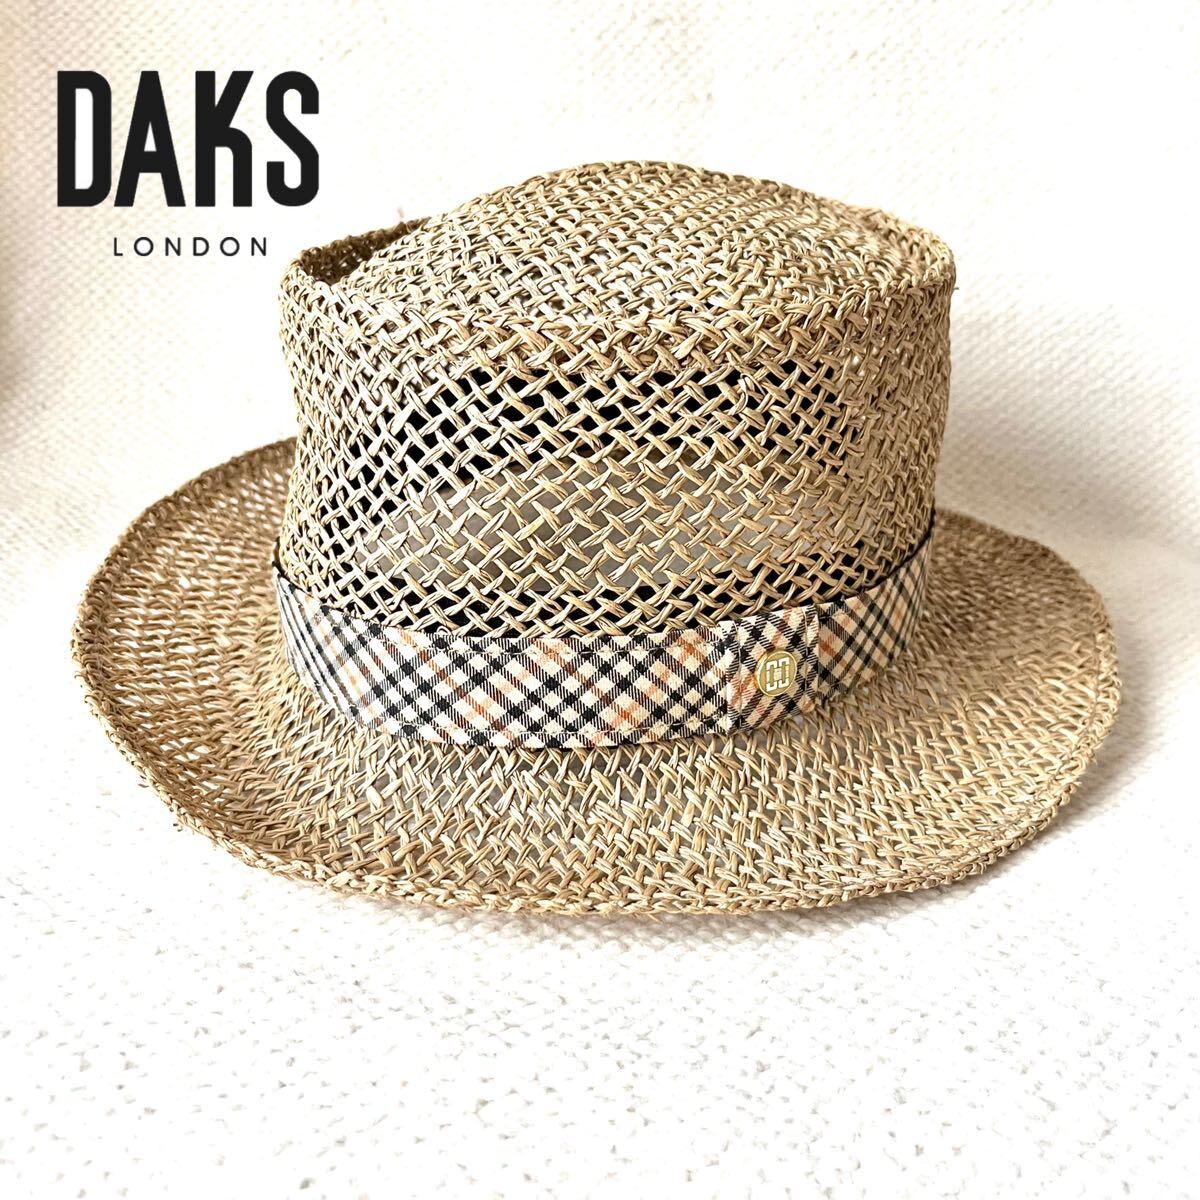 ダックス DAKS 天然草 ハット 帽子 麦わら帽子 ストローハット 56.5cm ベージュ チェック柄 日本製 レディース メンズ_画像1